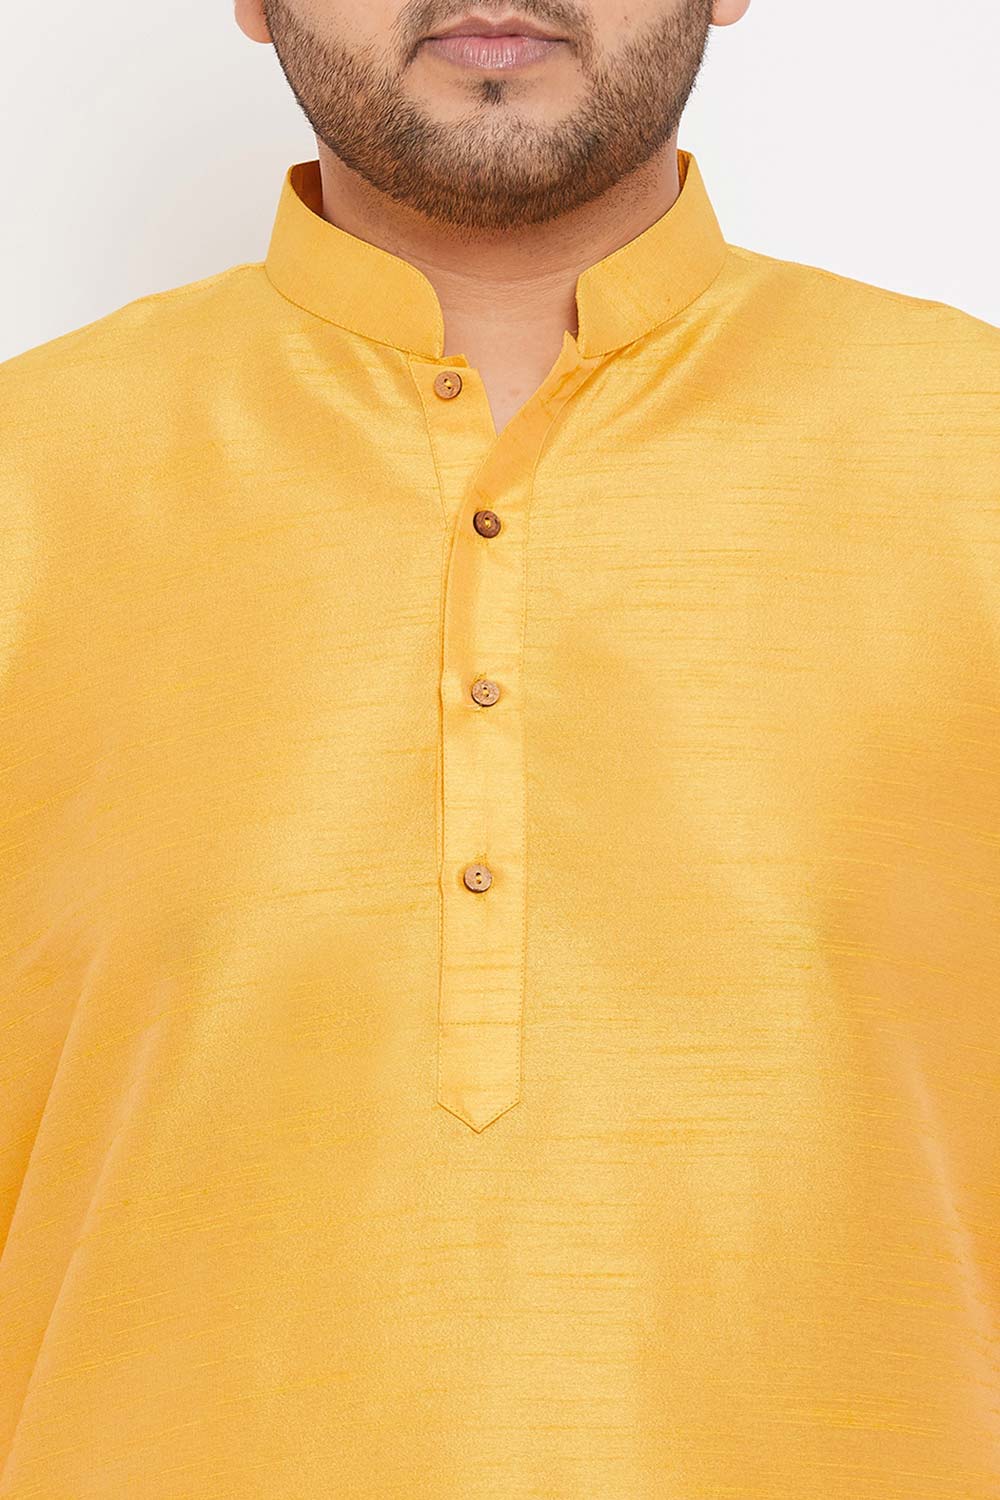 Buy Men's Silk Blend Solid Kurta in Yellow - Zoom in